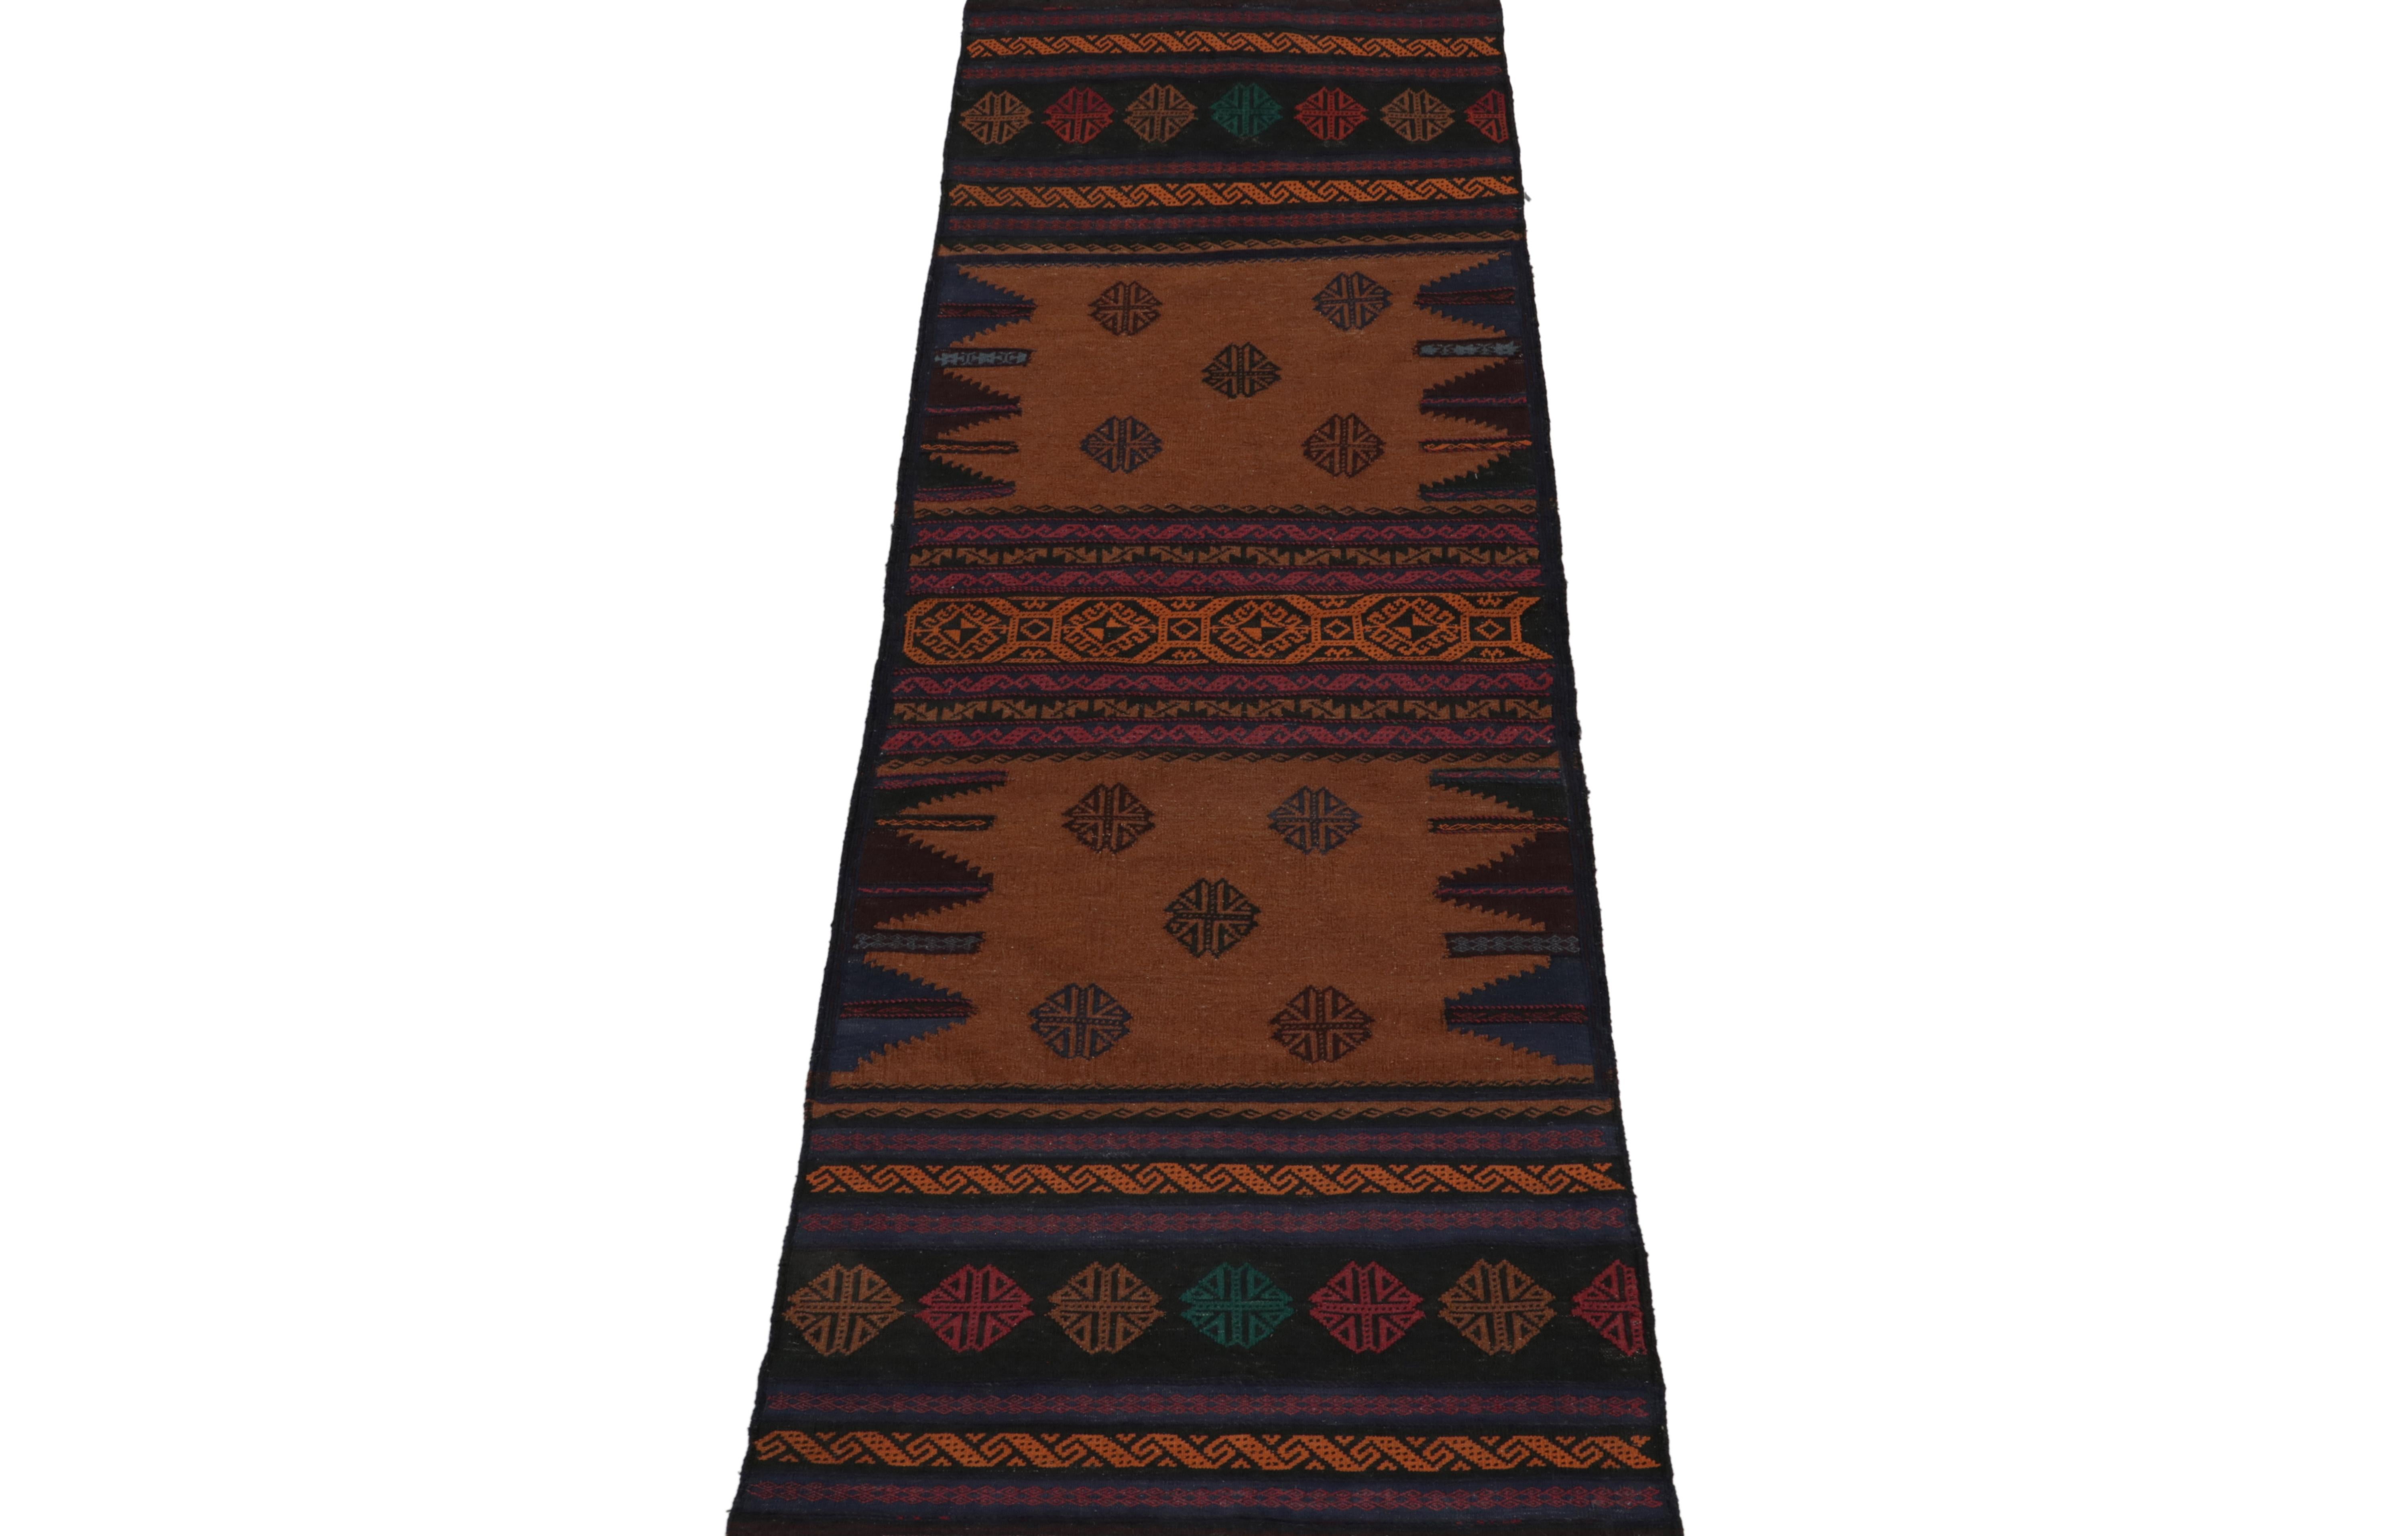 Dieser alte persische Kelim 3x8 ist ein einzigartiger Stammesläufer für seine Zeit, handgewebt aus Wolle um 1950-1960.

Weiter zum Design:

Das Feld ist gemustert, wobei der Schwerpunkt auf braunen, schwarzen, blauen, roten und orangenen